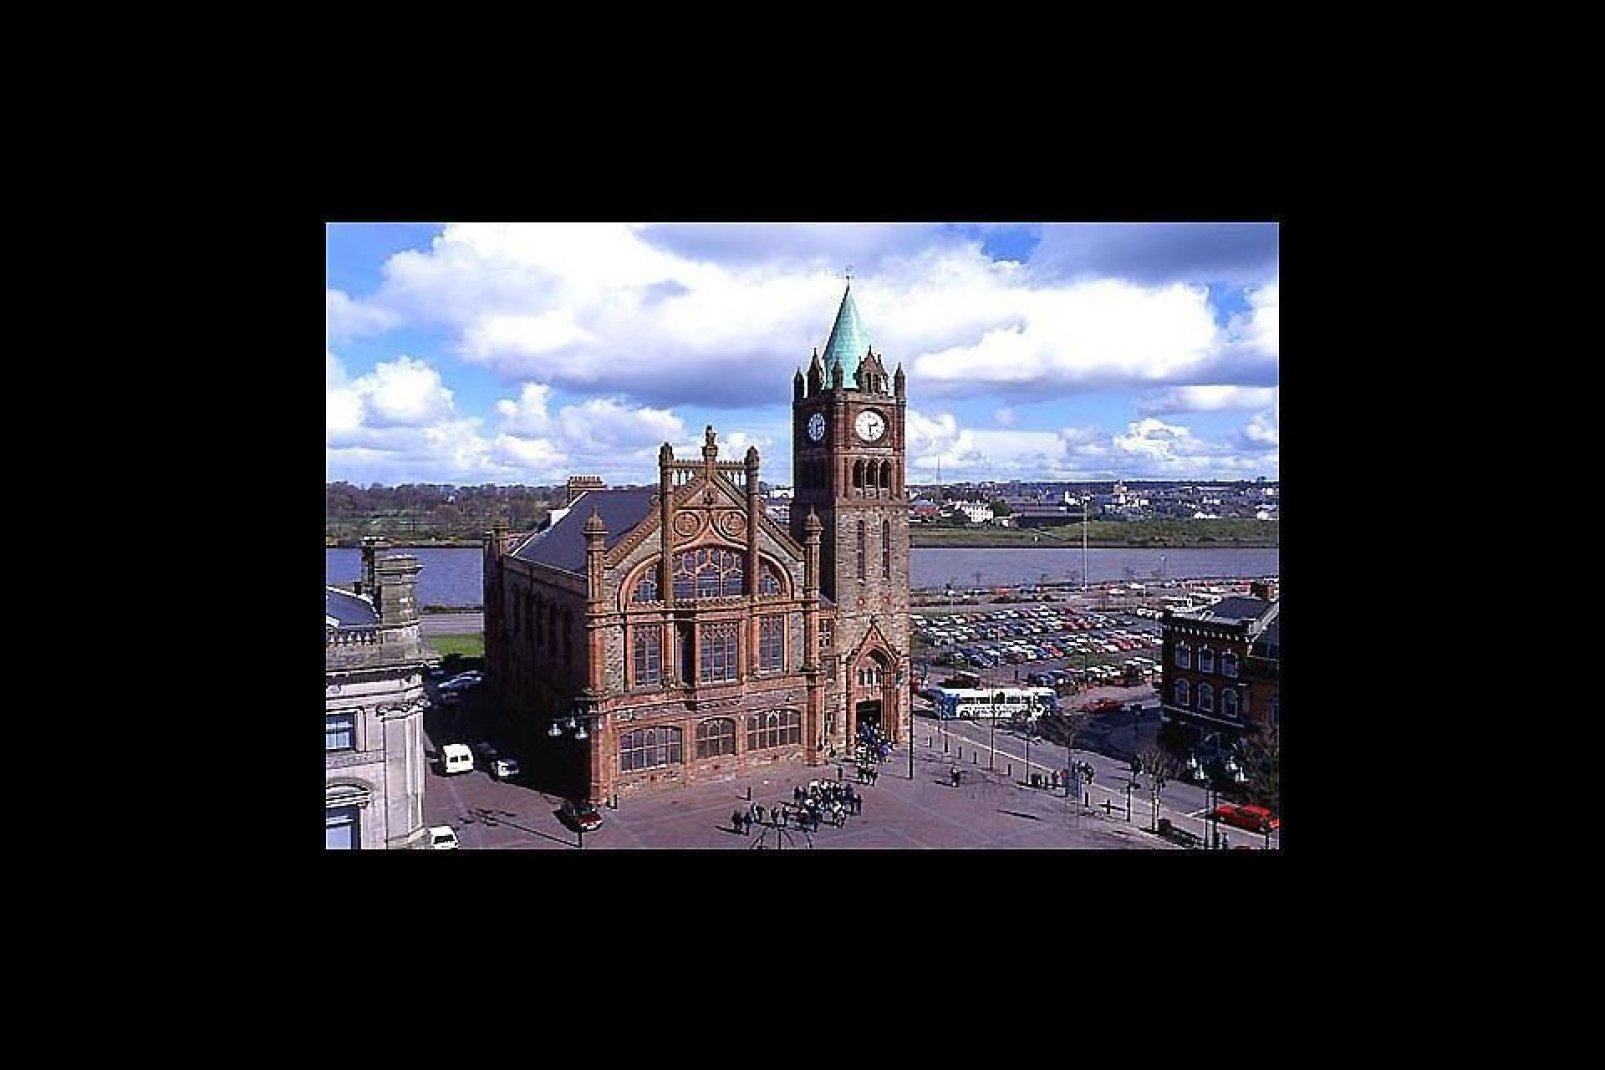 Derry, auch Londonderry genannt, die die zweitgrößte Stadt von Nordirland. Diese ehemalige Festungsstadt liegt am Westufer des Flusses Foyle, der von zwei Brücken überquert wird.